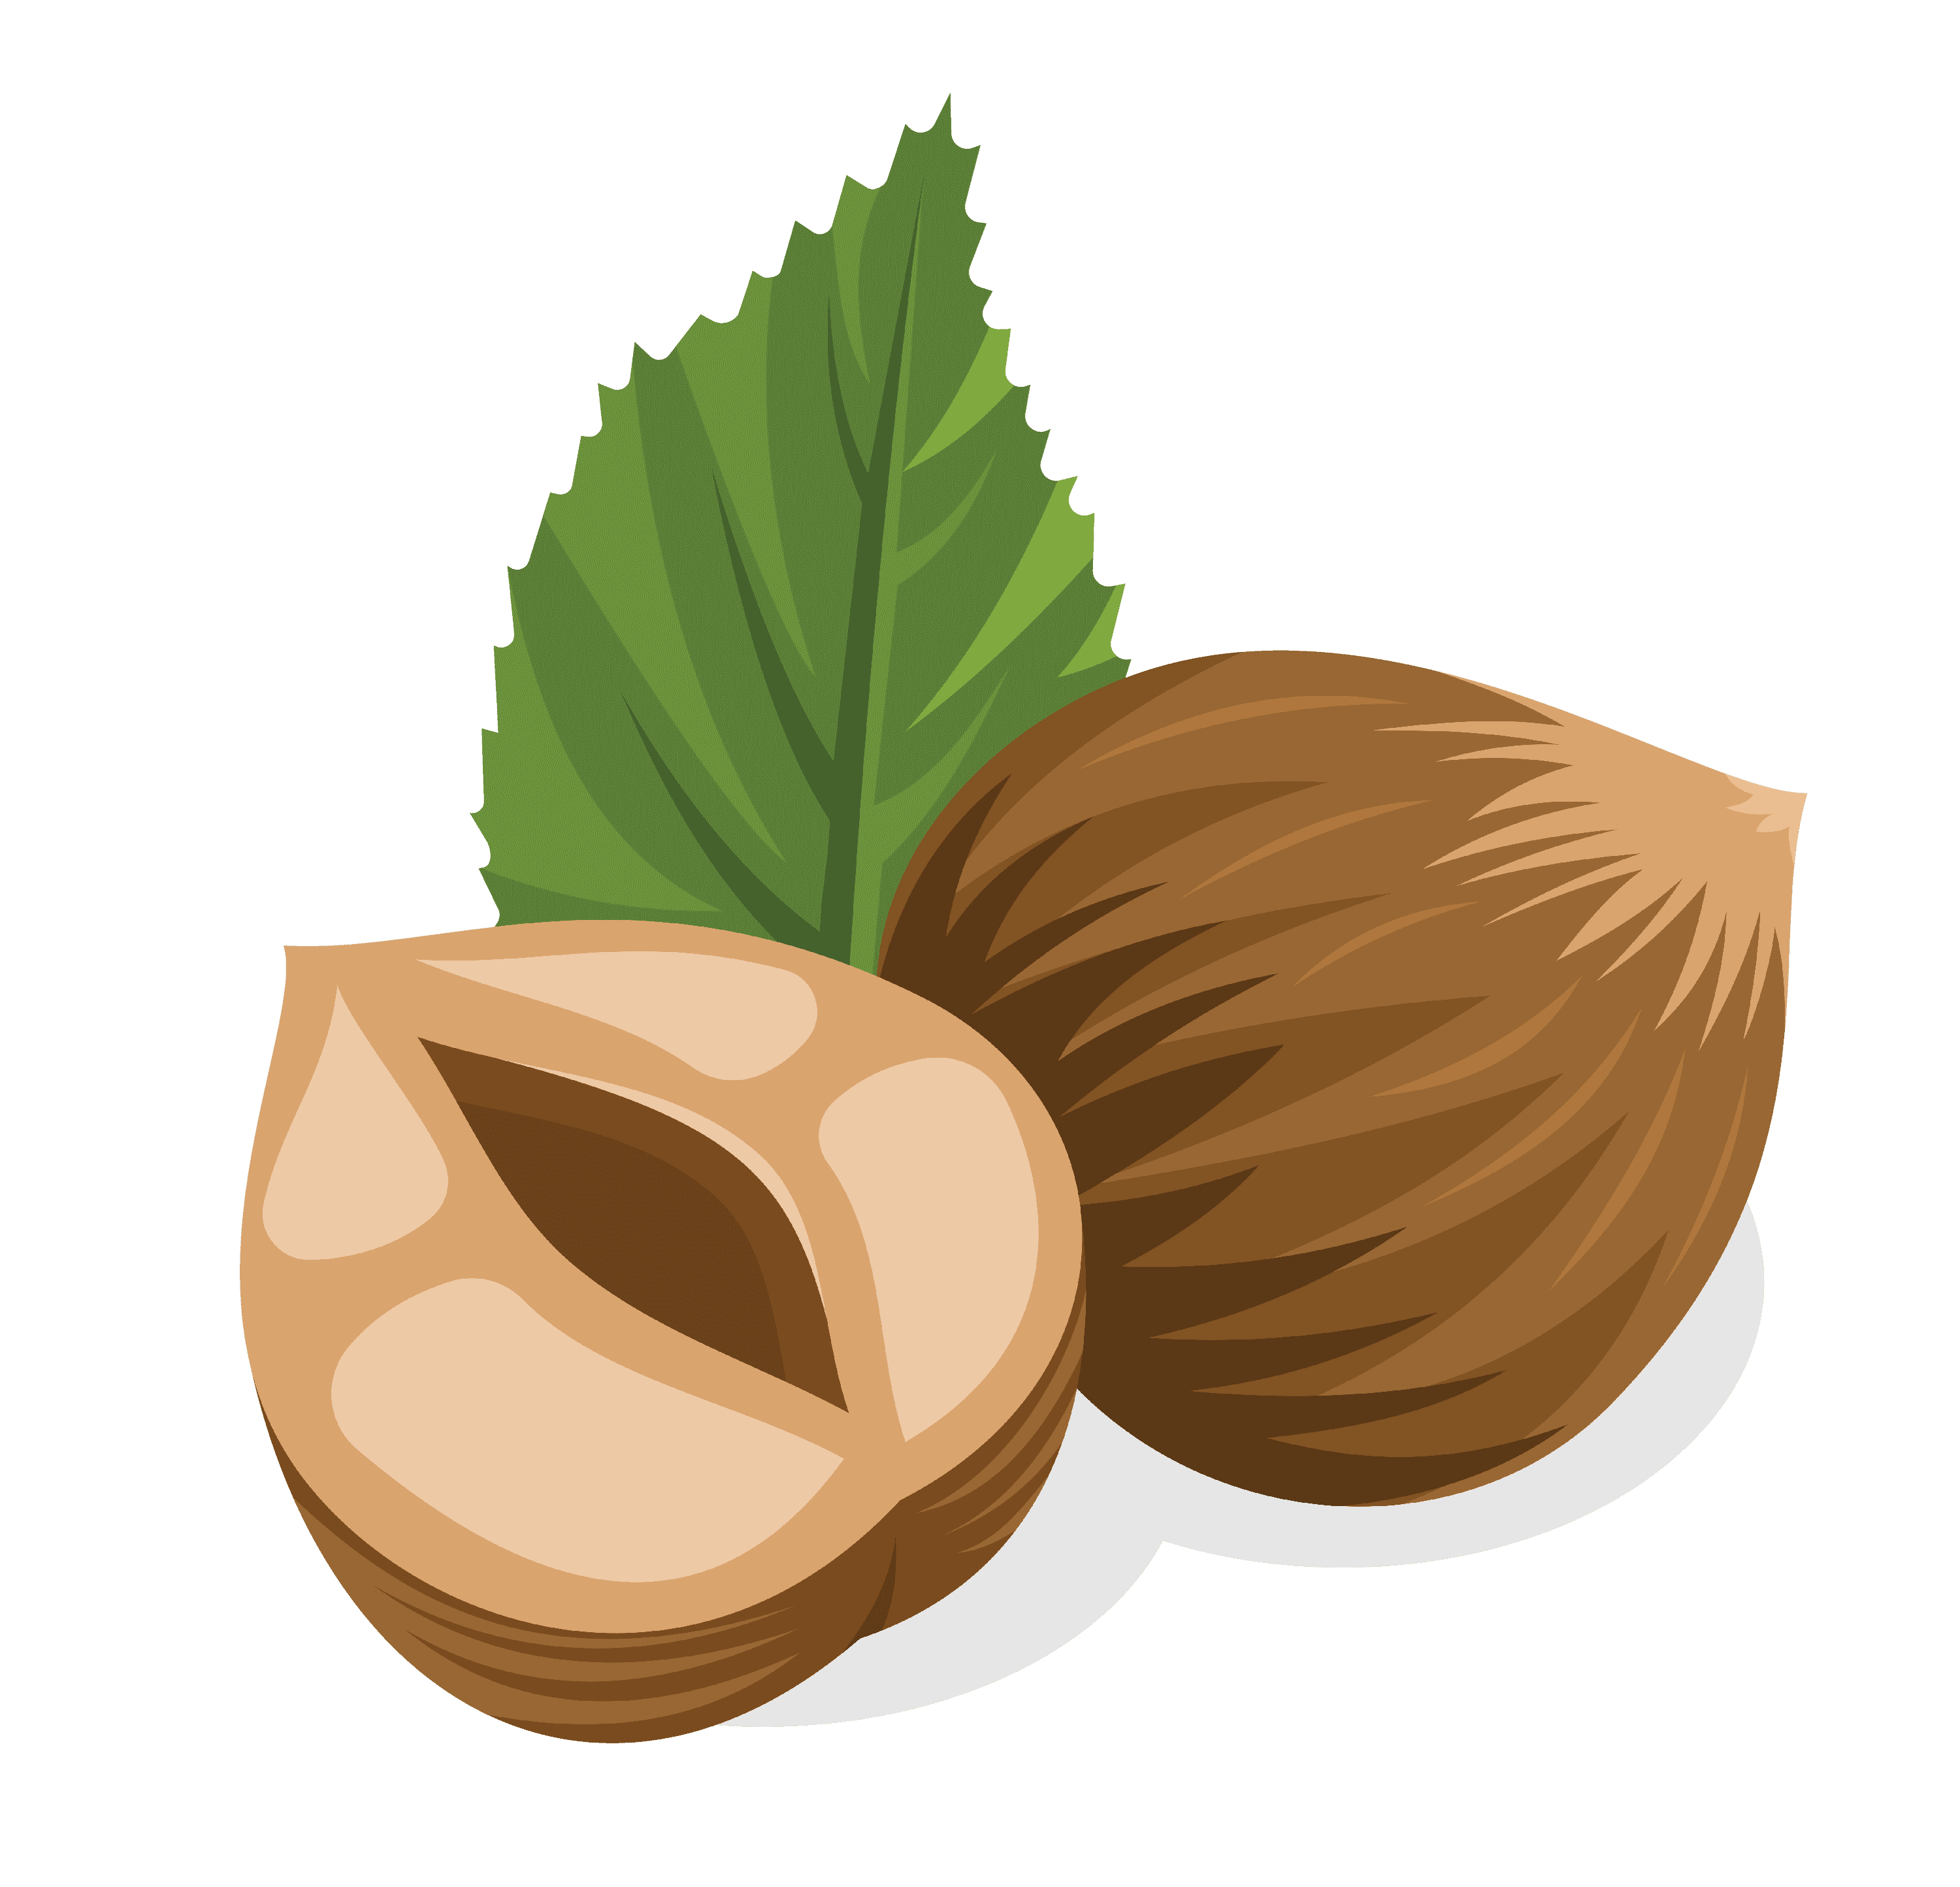 лесной орех, фундук PNG